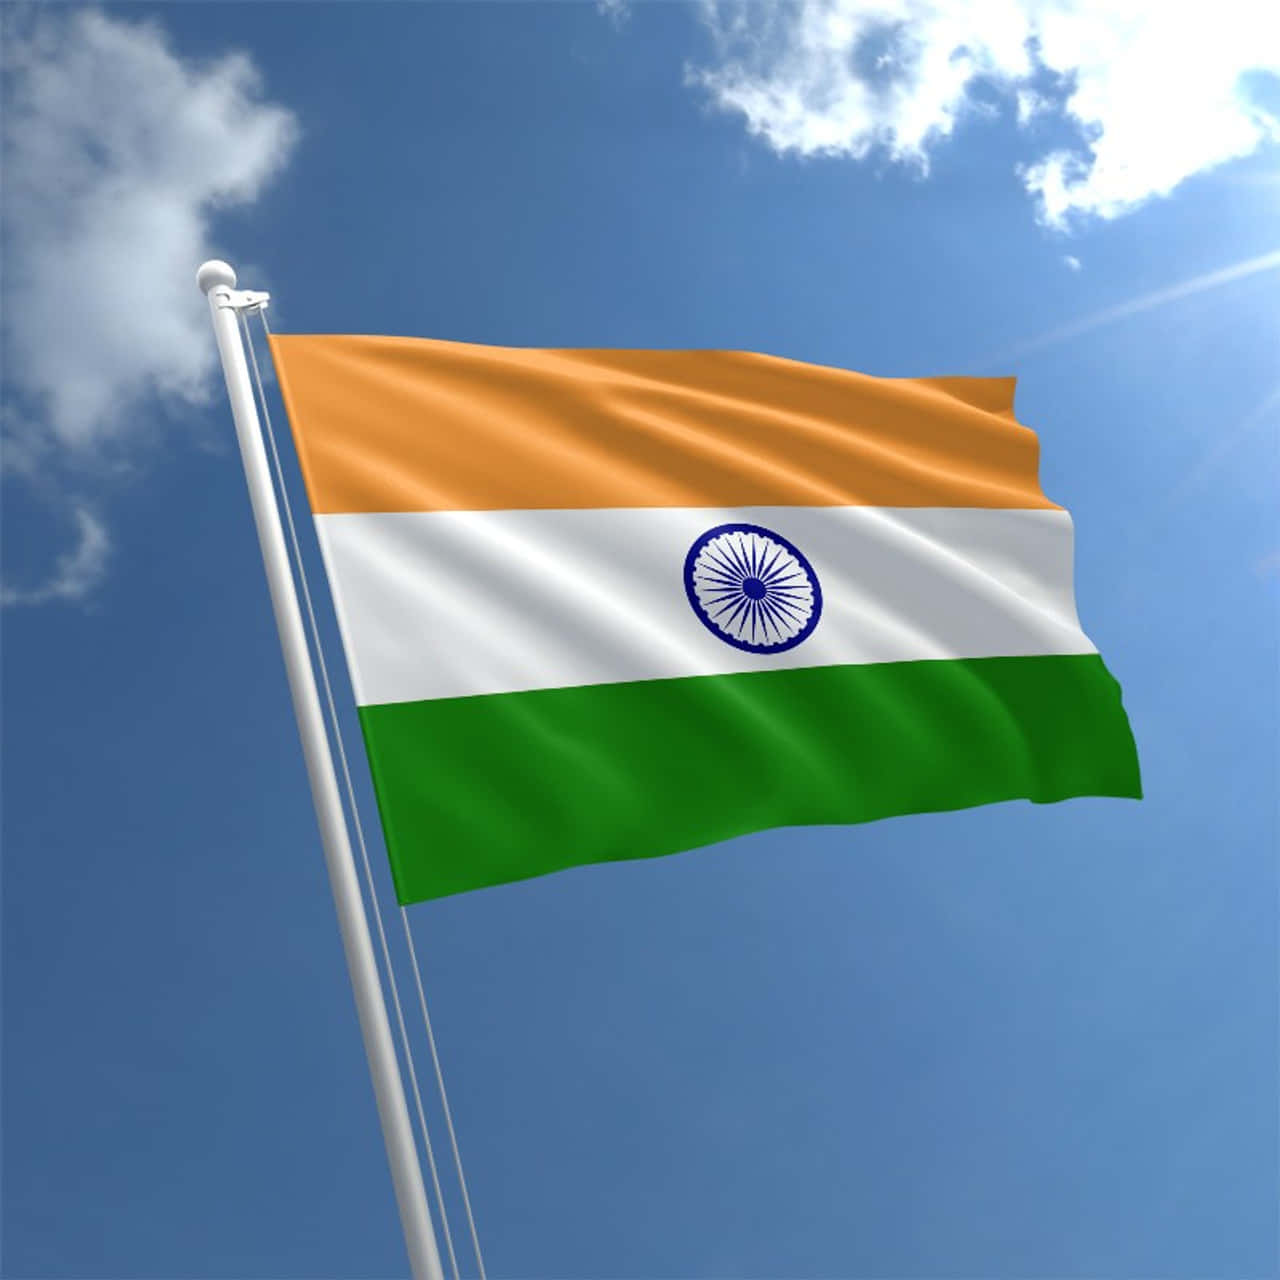 Zeigensie Ihre Liebe Für Indien Mit Dieser Indischen Flagge